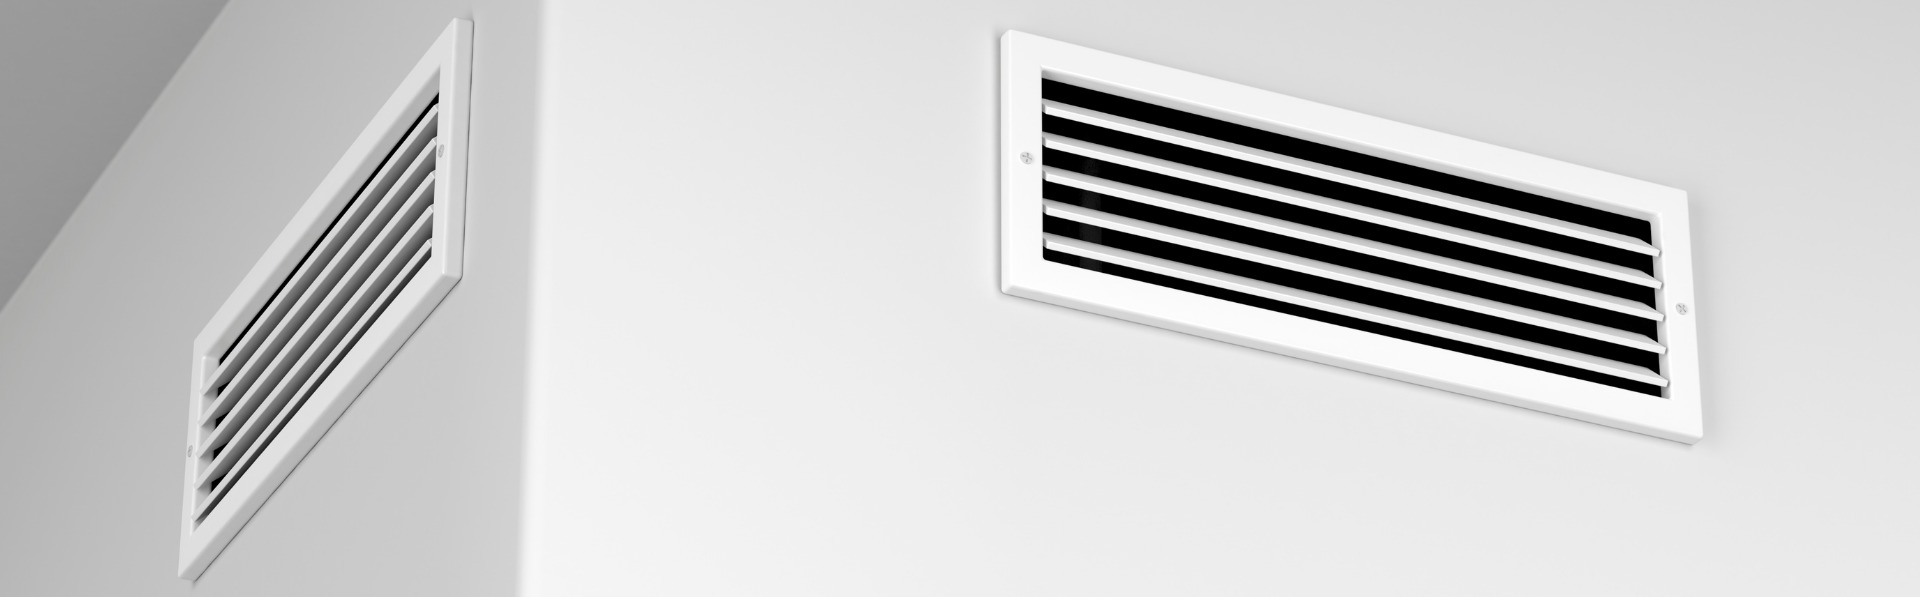 Het belang van juiste ventilatie in uw nieuwbouwwoning